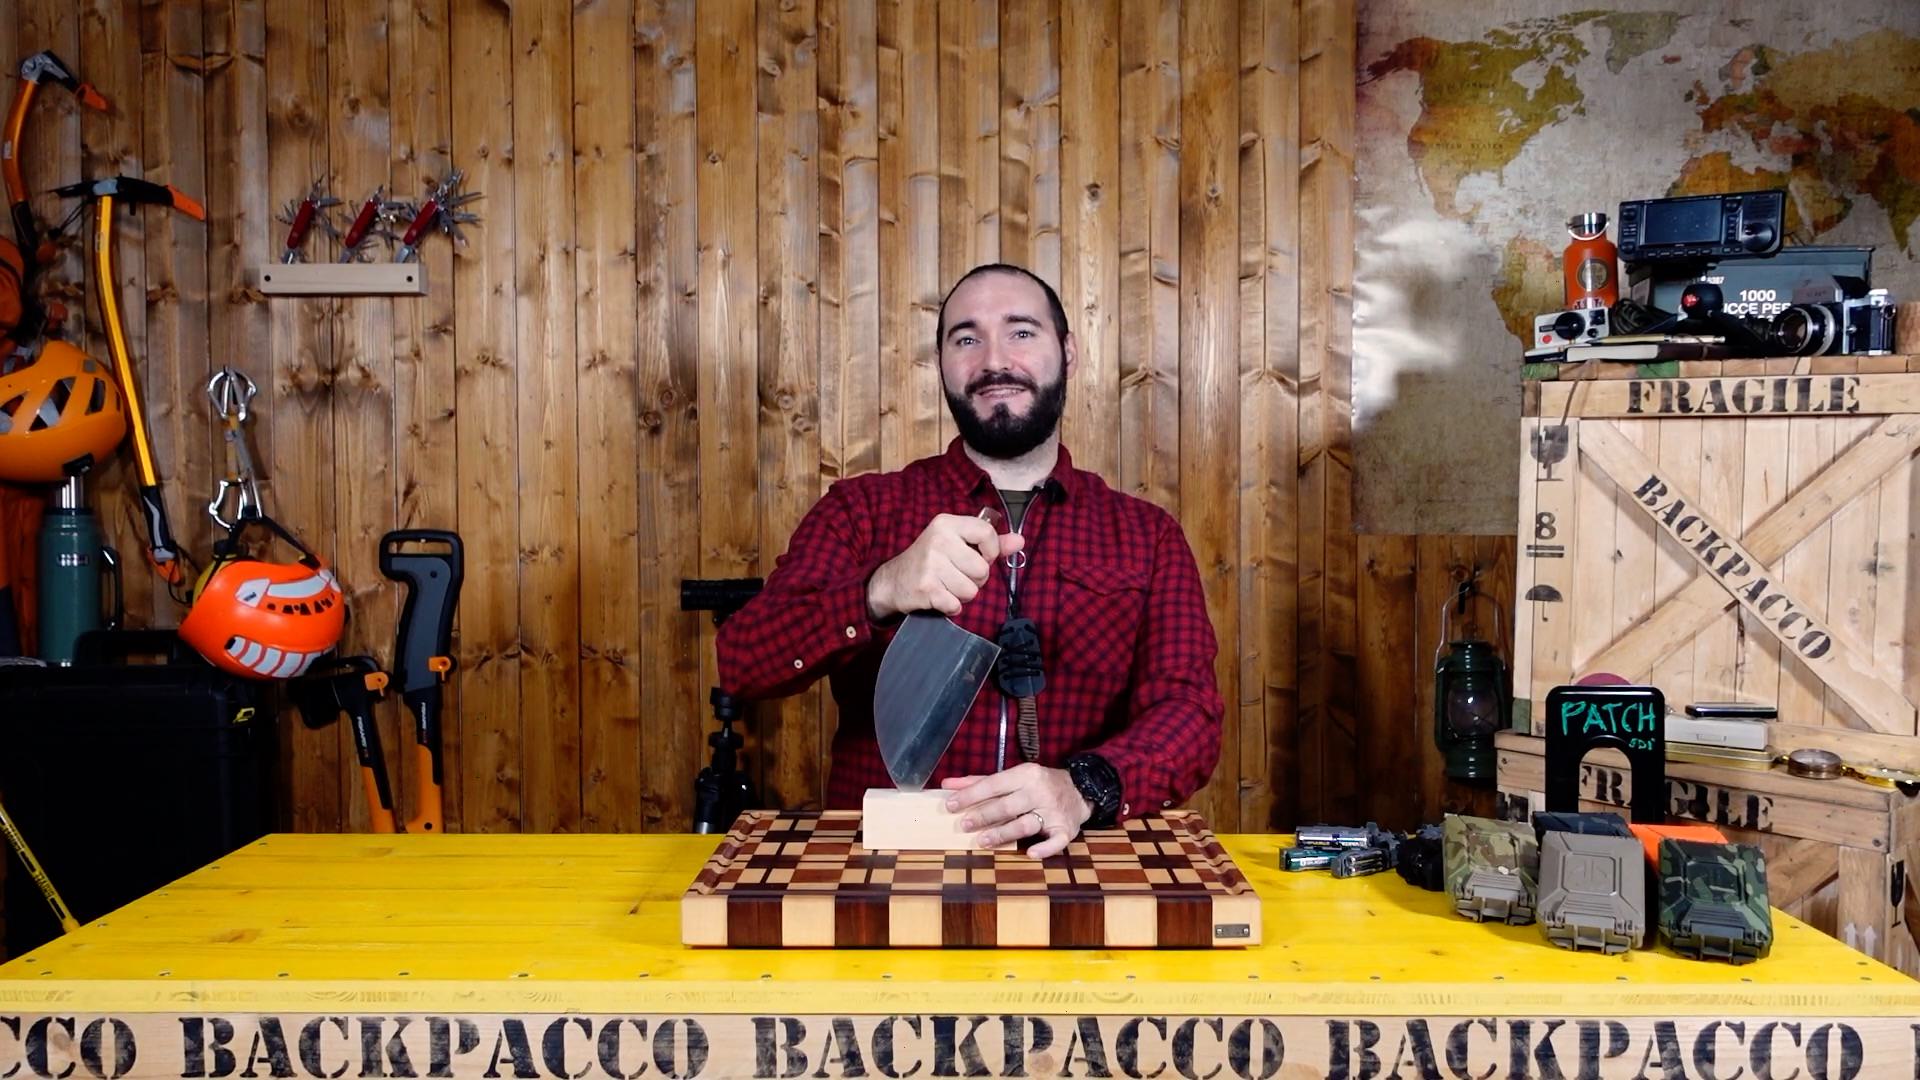 Copertina del video dove Paolo di Backpacco spiega la VH-KNIFE1 DI VALHAL